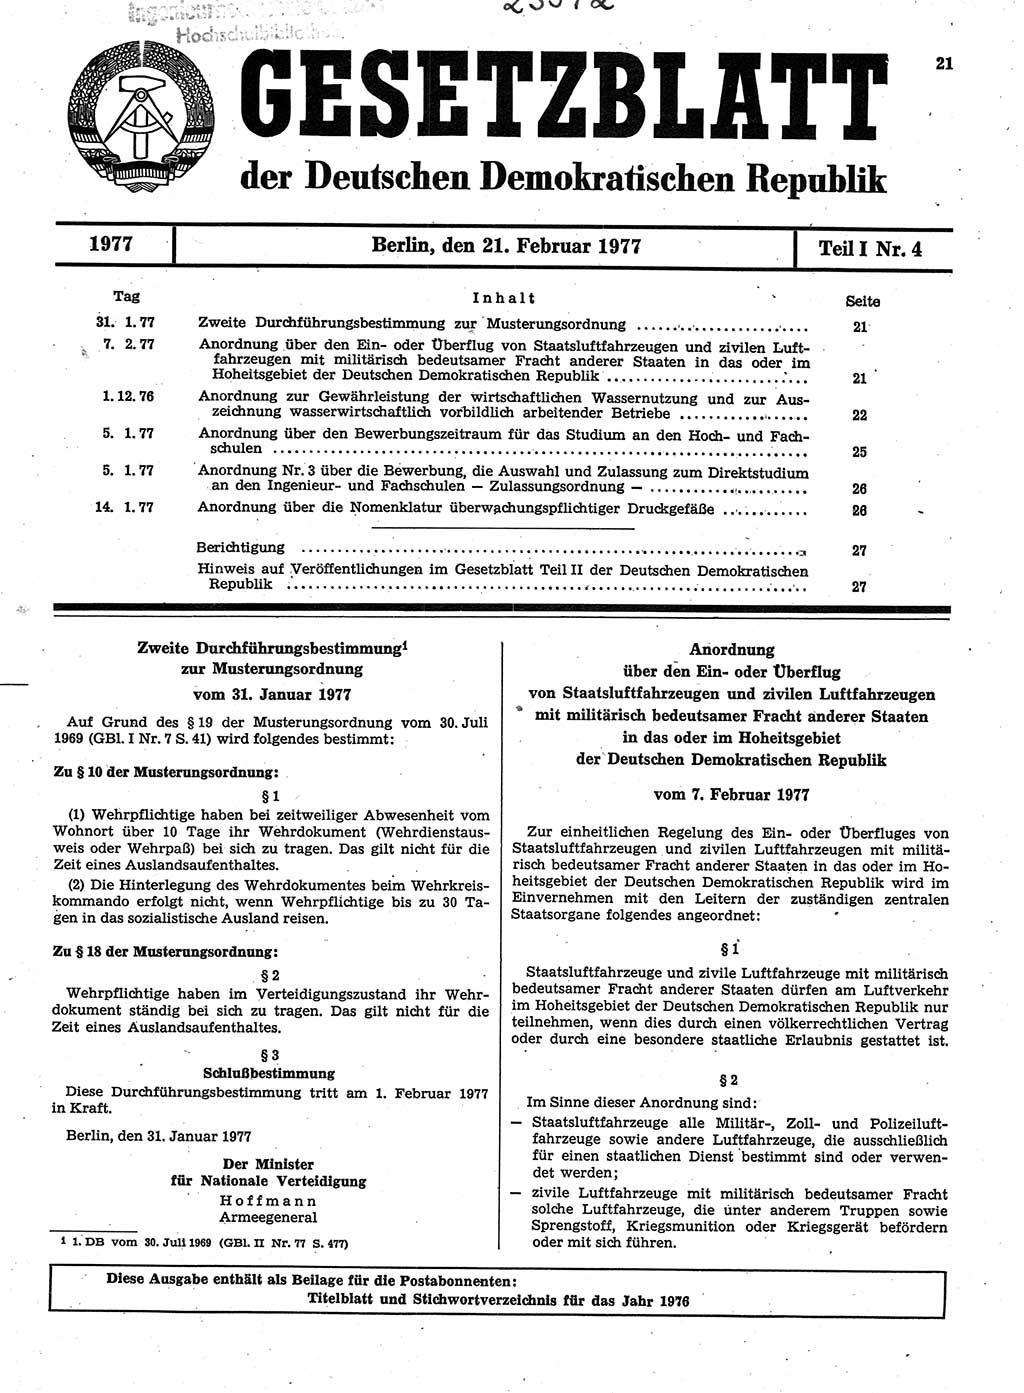 Gesetzblatt (GBl.) der Deutschen Demokratischen Republik (DDR) Teil Ⅰ 1977, Seite 21 (GBl. DDR Ⅰ 1977, S. 21)